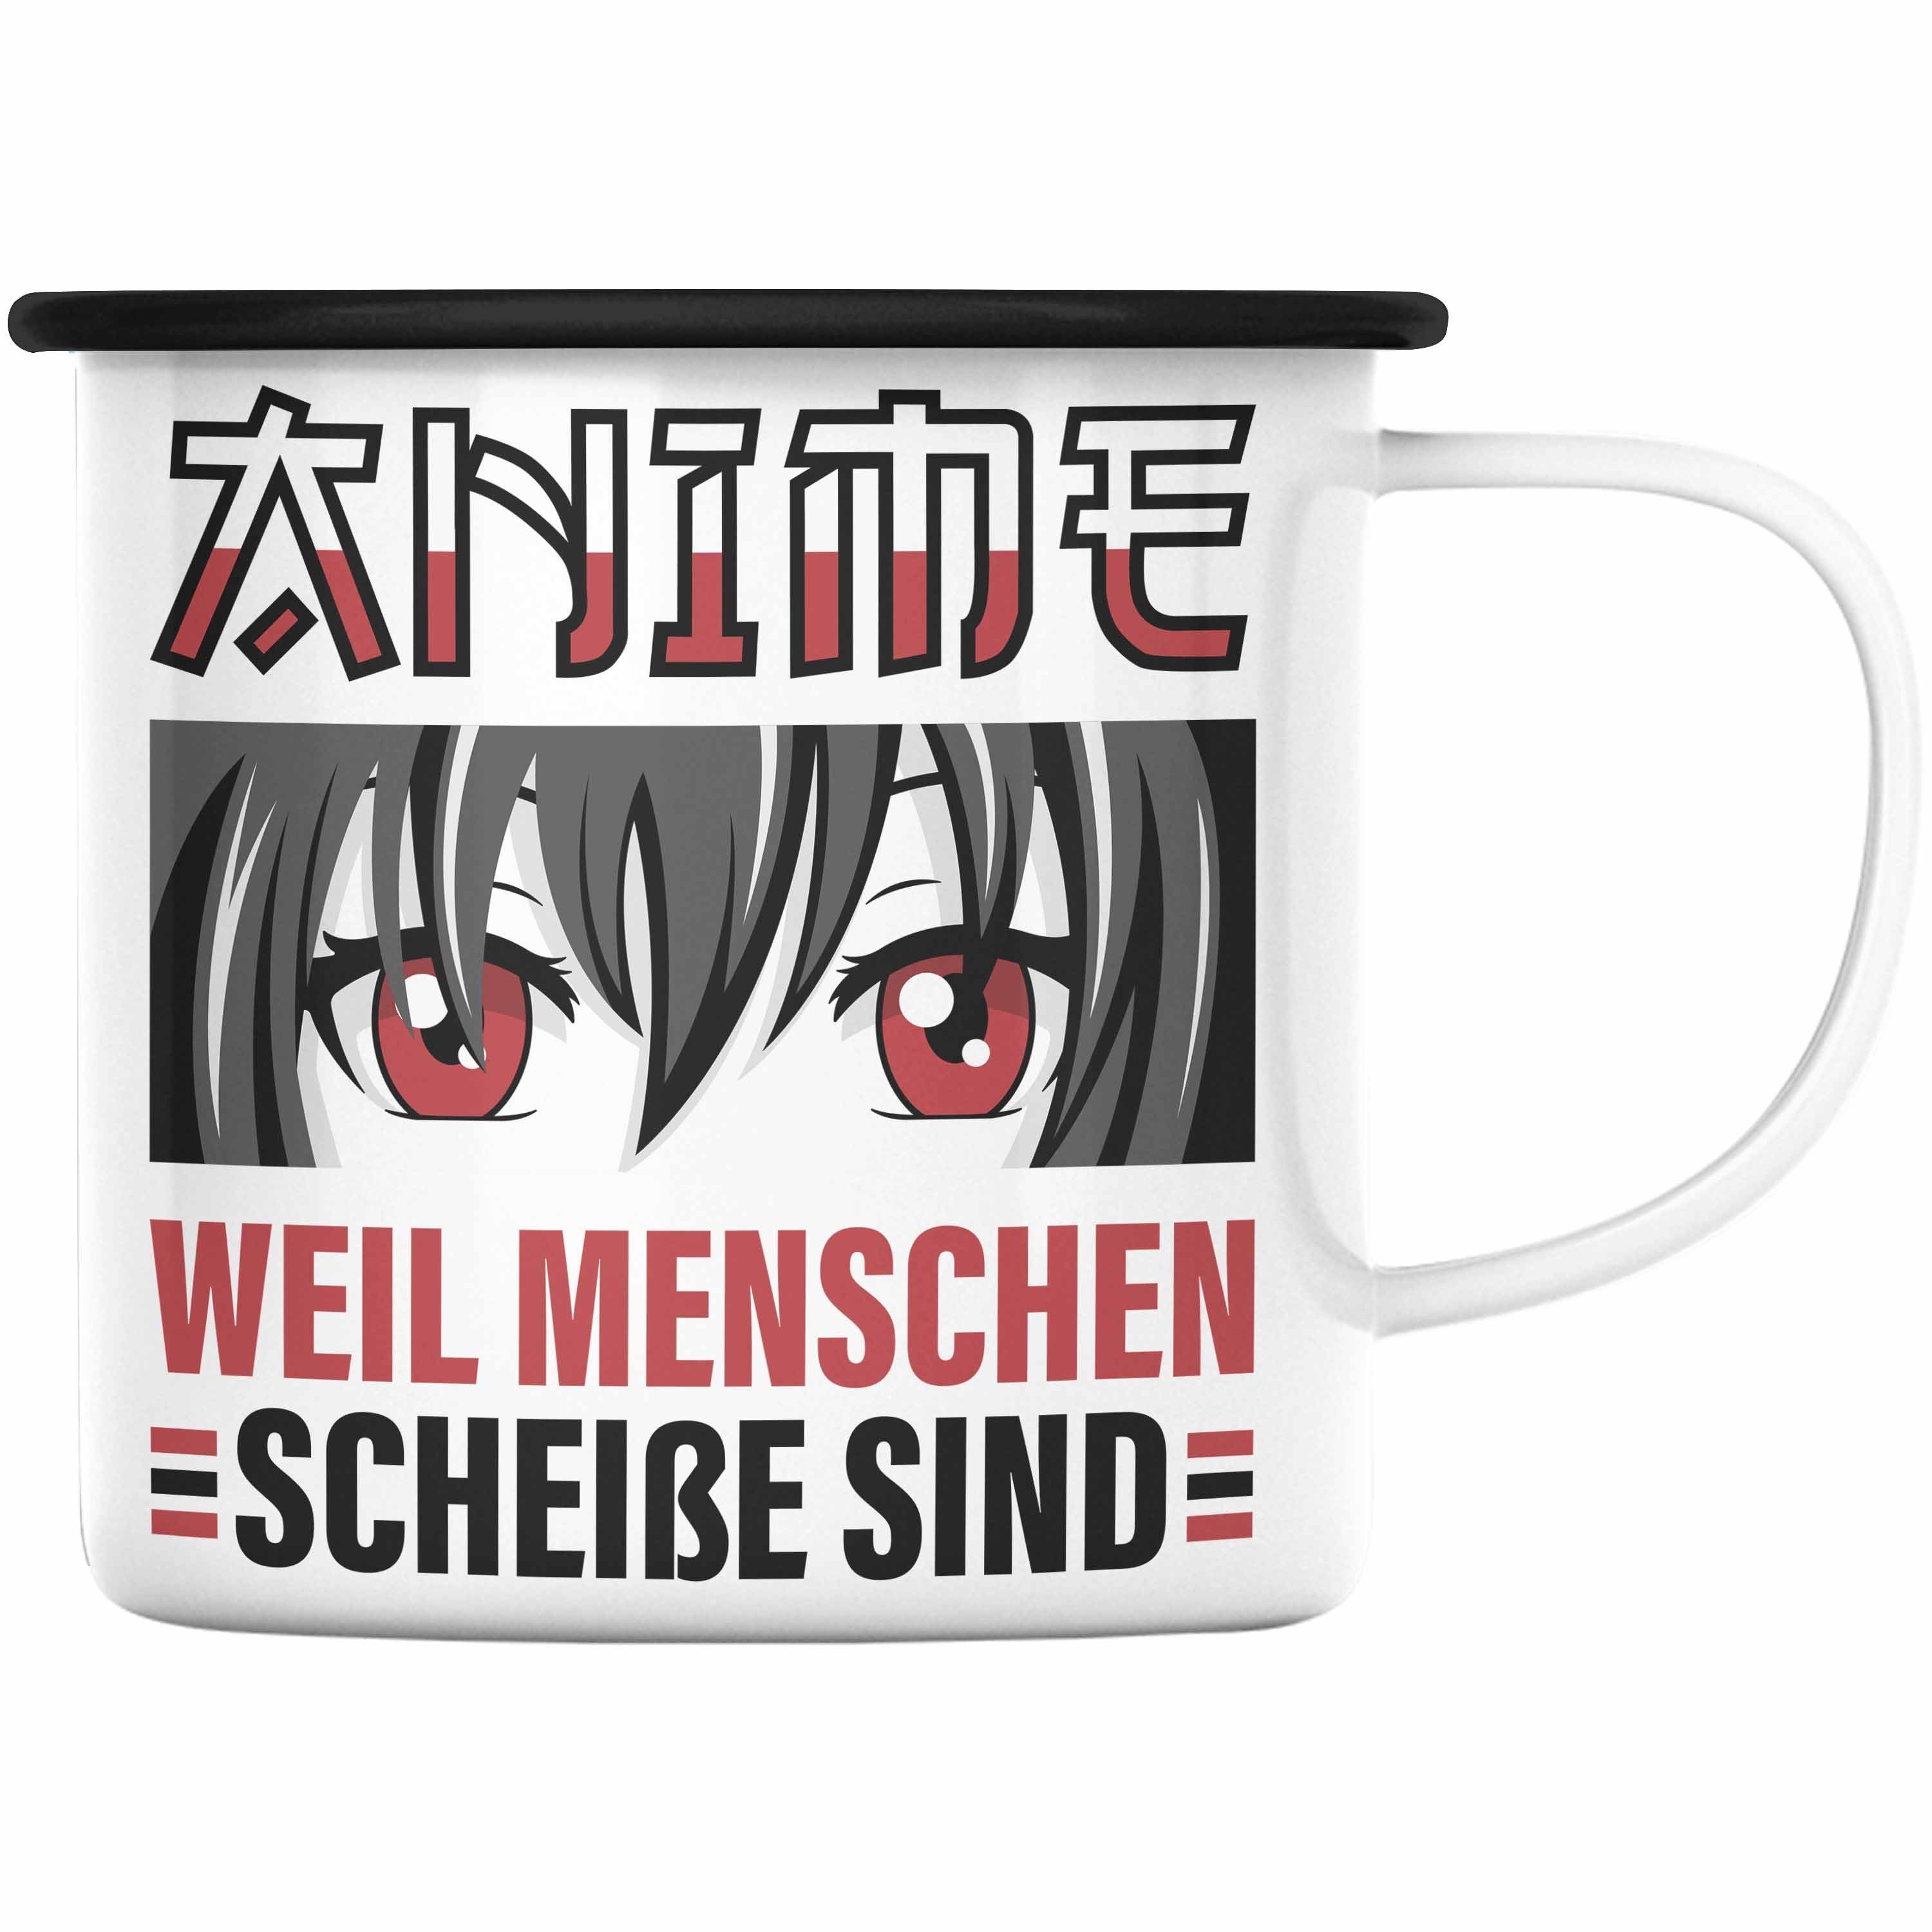 Trendation Thermotasse Trendation - Anime Emaille Tasse Geschenk Spruch KaffeeEmaille Tasse Schwarz